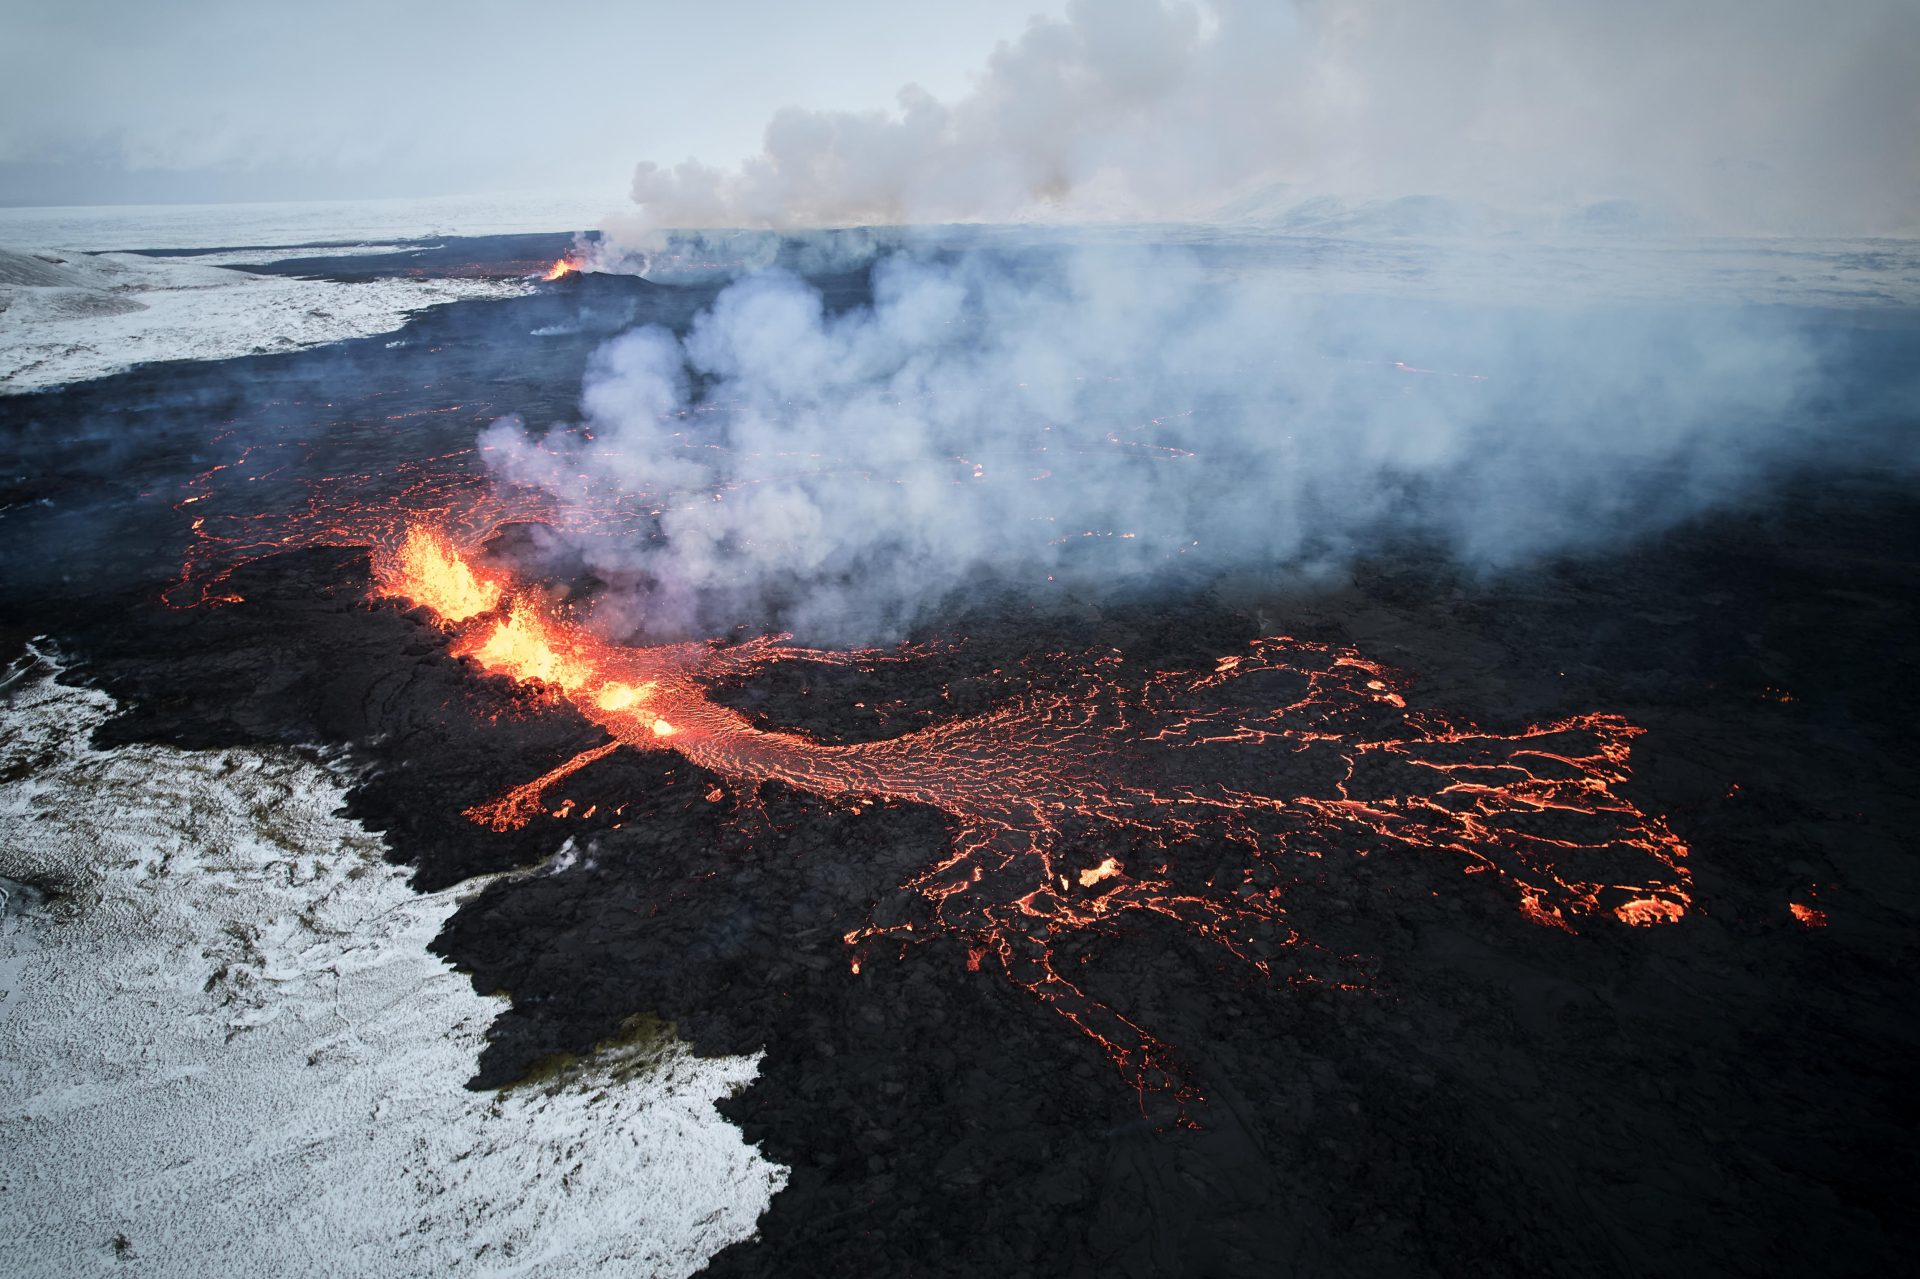 Fotografía aérea tomada con un drone muestra lava y humo saliendo de una fisura volcánica durante una erupción cerca de la ciudad de Grindavik, en la península de Reykjanes (Islandia). La Oficina Meteorológica de Islandia (OMI) anunció el inicio de una erupción volcánica fisural cerca del cráter de Sundhnuka, al noreste de Grindavik, en la noche del 18 de diciembre, tras semanas de intensa actividad sísmica en la zona. La potencia y la actividad sísmica de la erupción han disminuido con el tiempo, informó la OMI el 19 de diciembre, añadiendo que se han registrado unos 320 seísmos desde el inicio de la erupción. EFE/EPA/ANTON BRINK